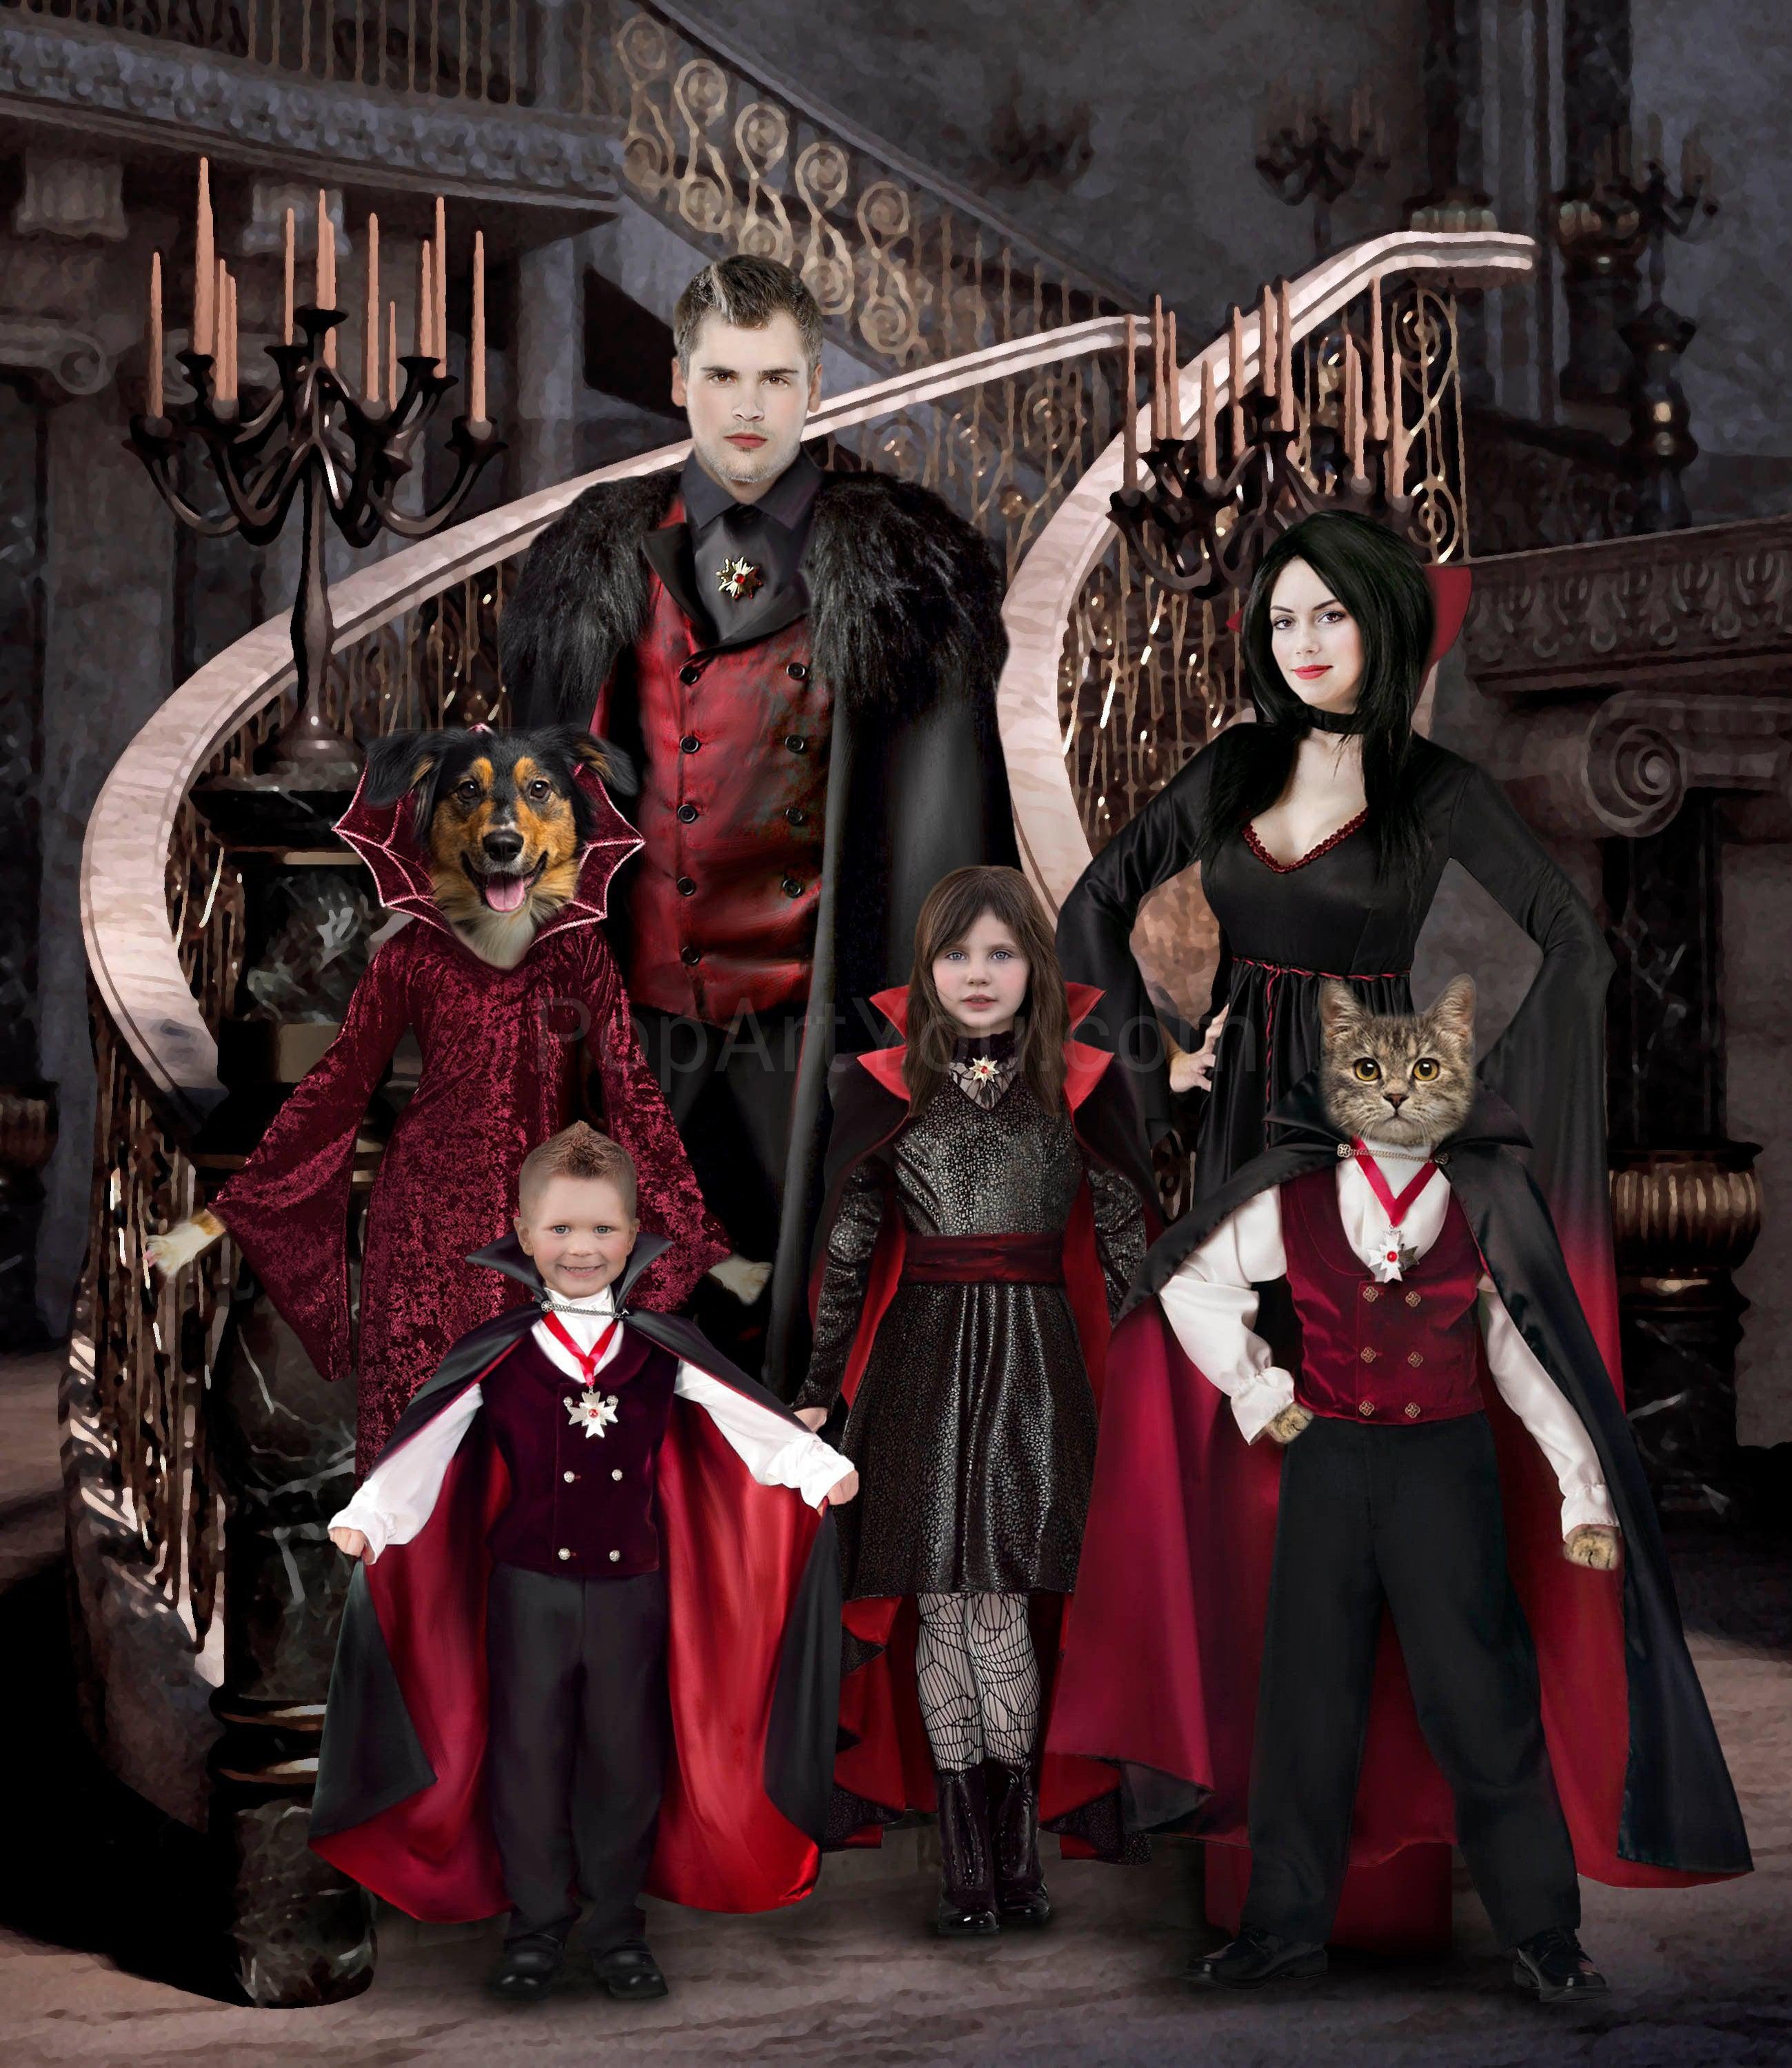 Vampire family portrait #1 - Any family combination